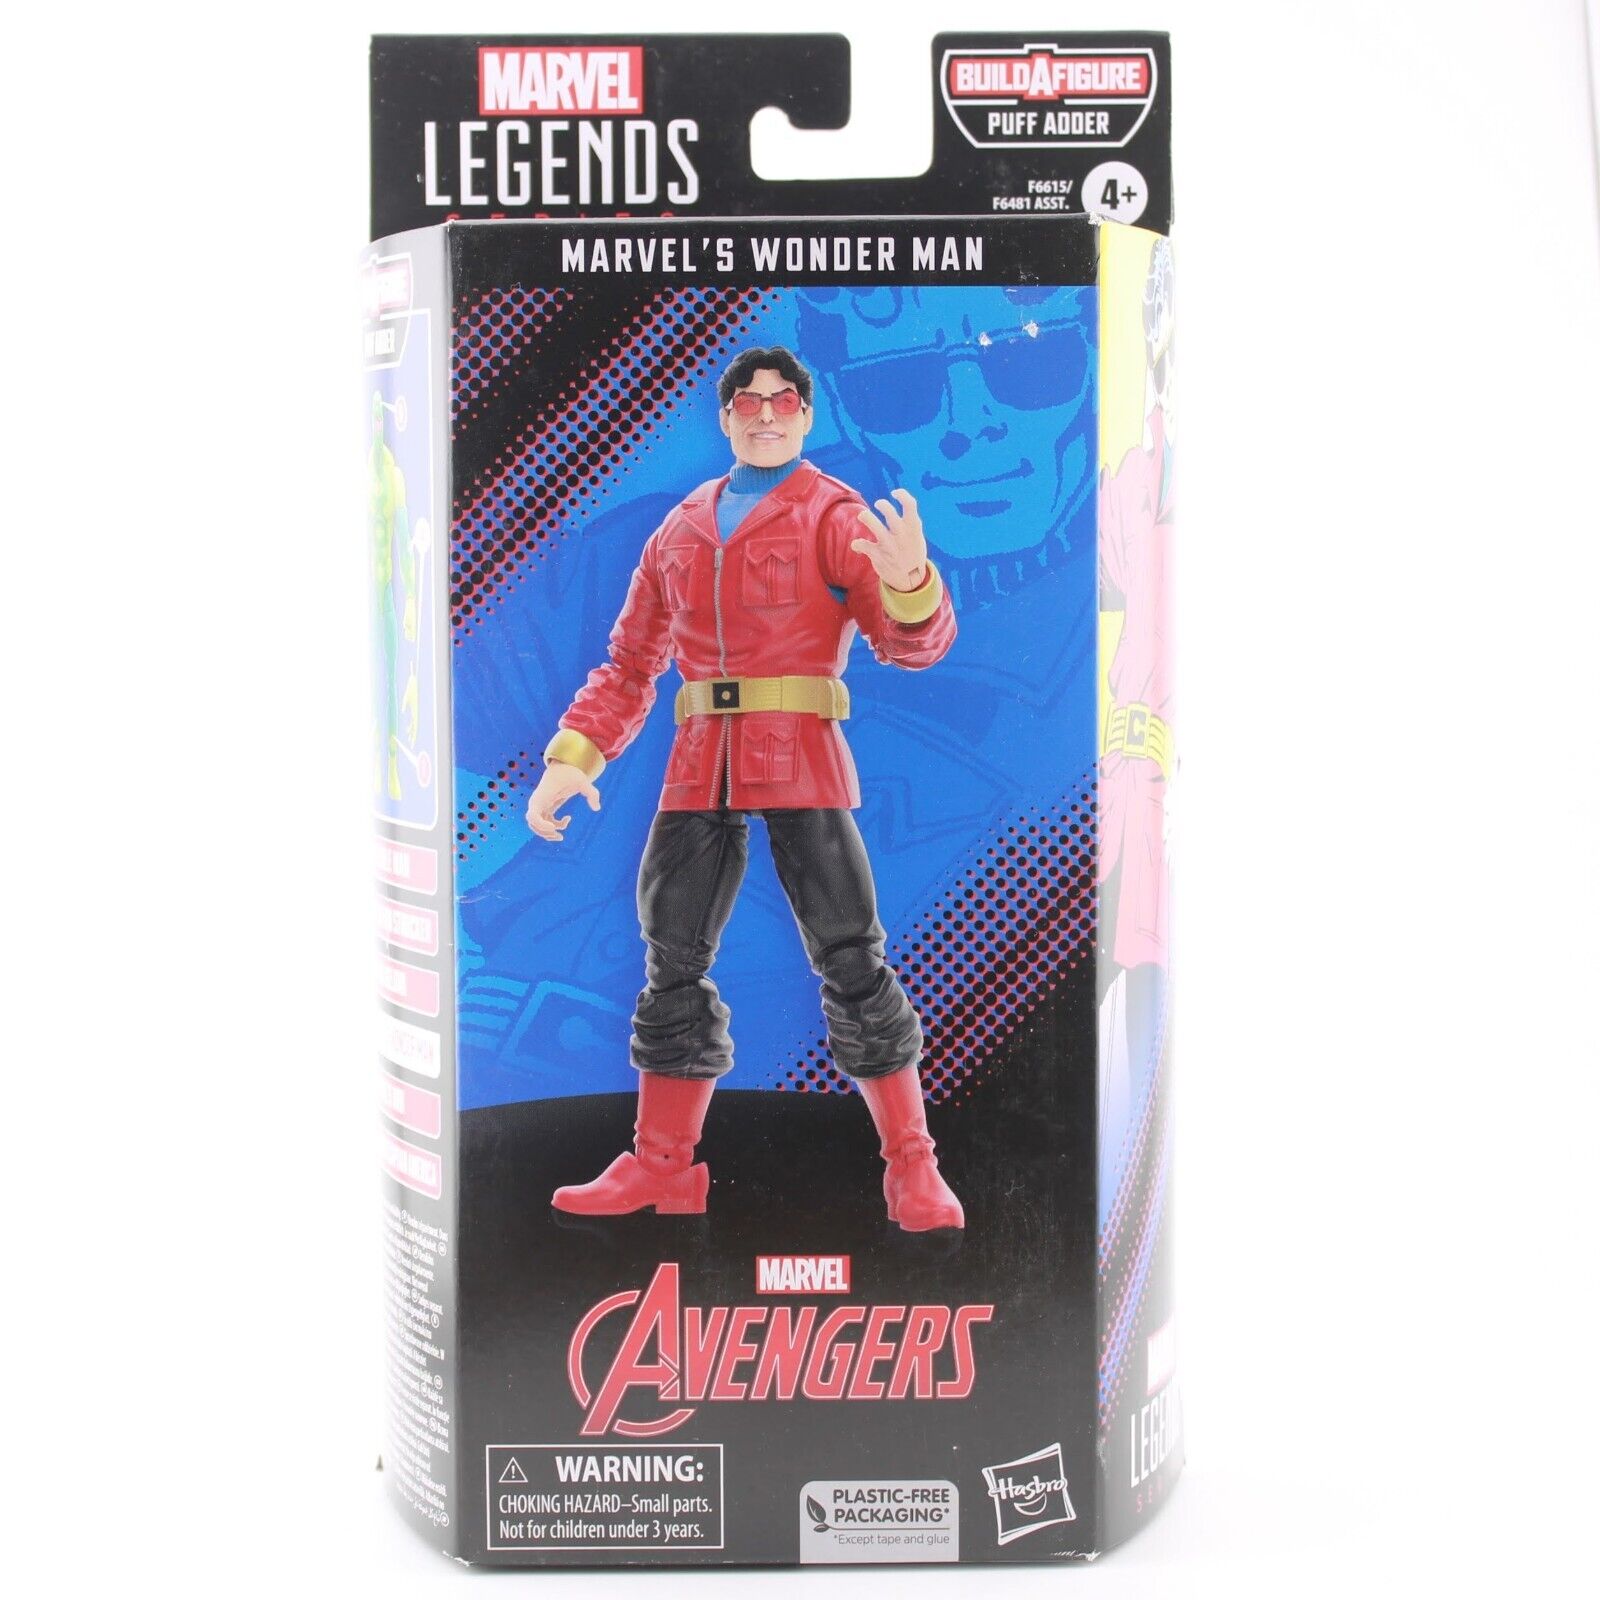 Marvel Legends Avengers Wonder Man - Puff Adder BAF 6" Action Figure